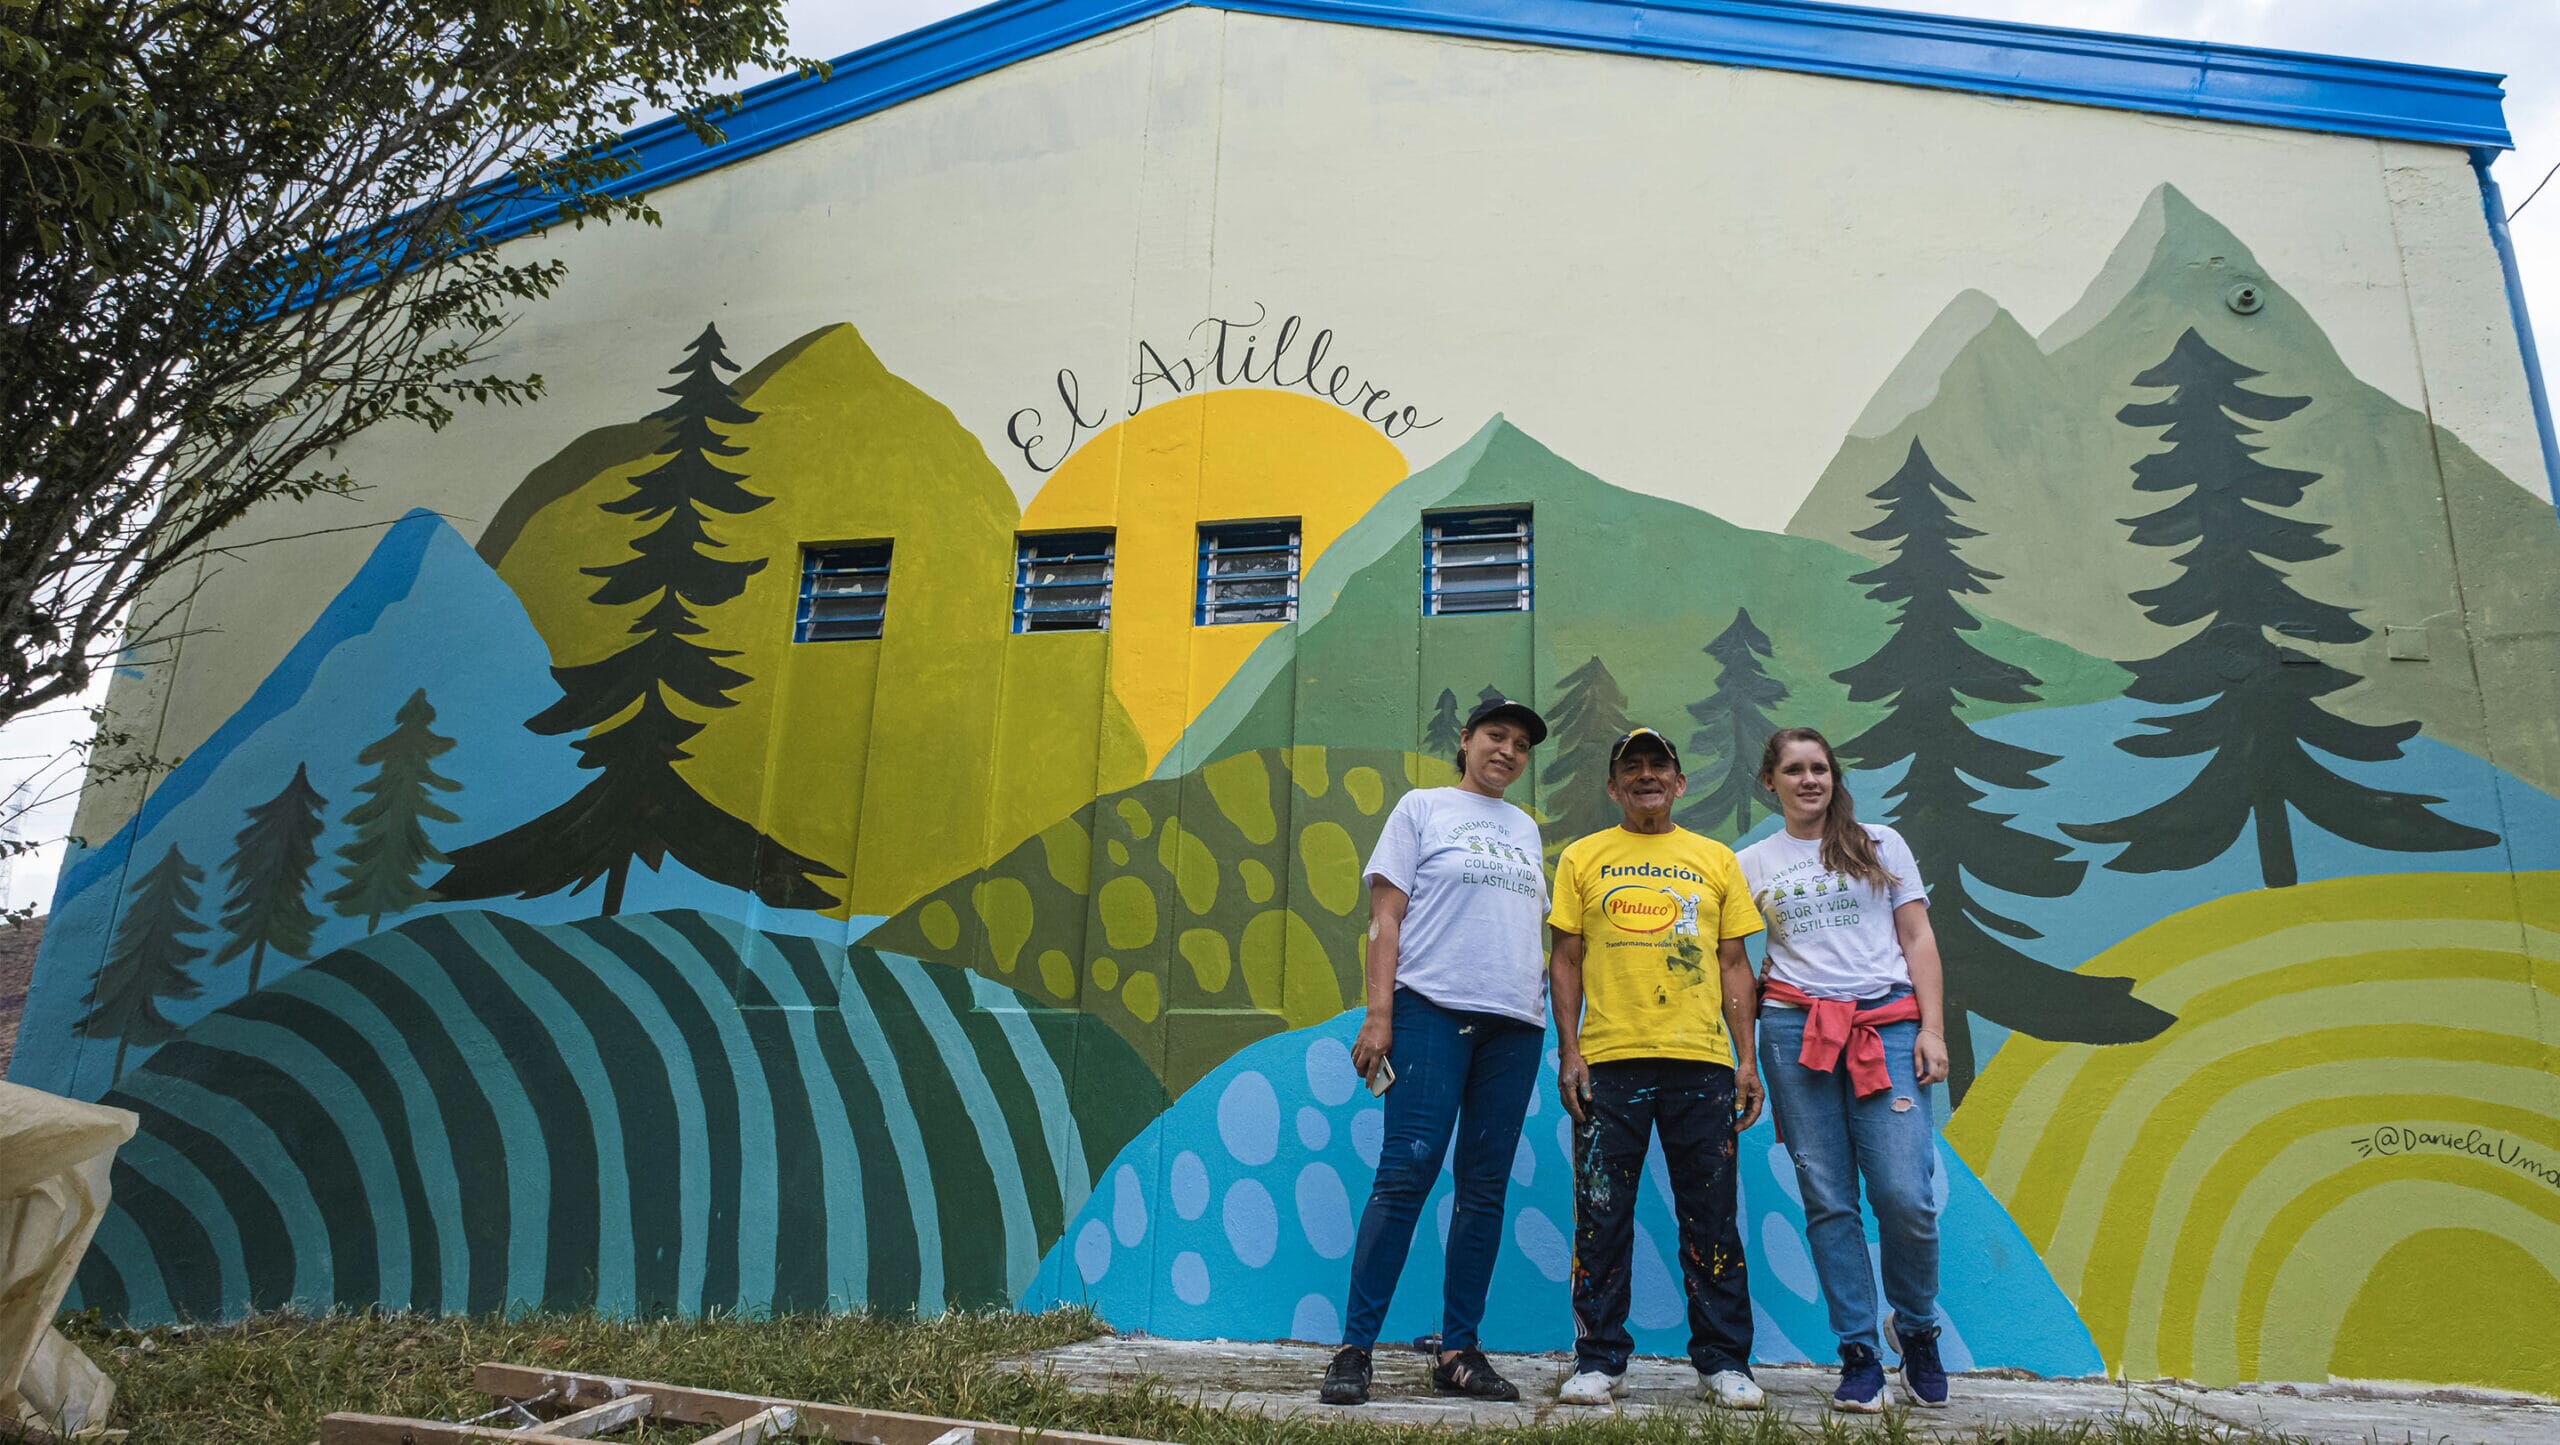 Drei Freiwillige stehen stolz vor einer großen Wandmalerei mit bunten, abstrakten Bergen und Bäumen, der Schriftzug "El Astillero" ist über ihnen an der Wand zu sehen.